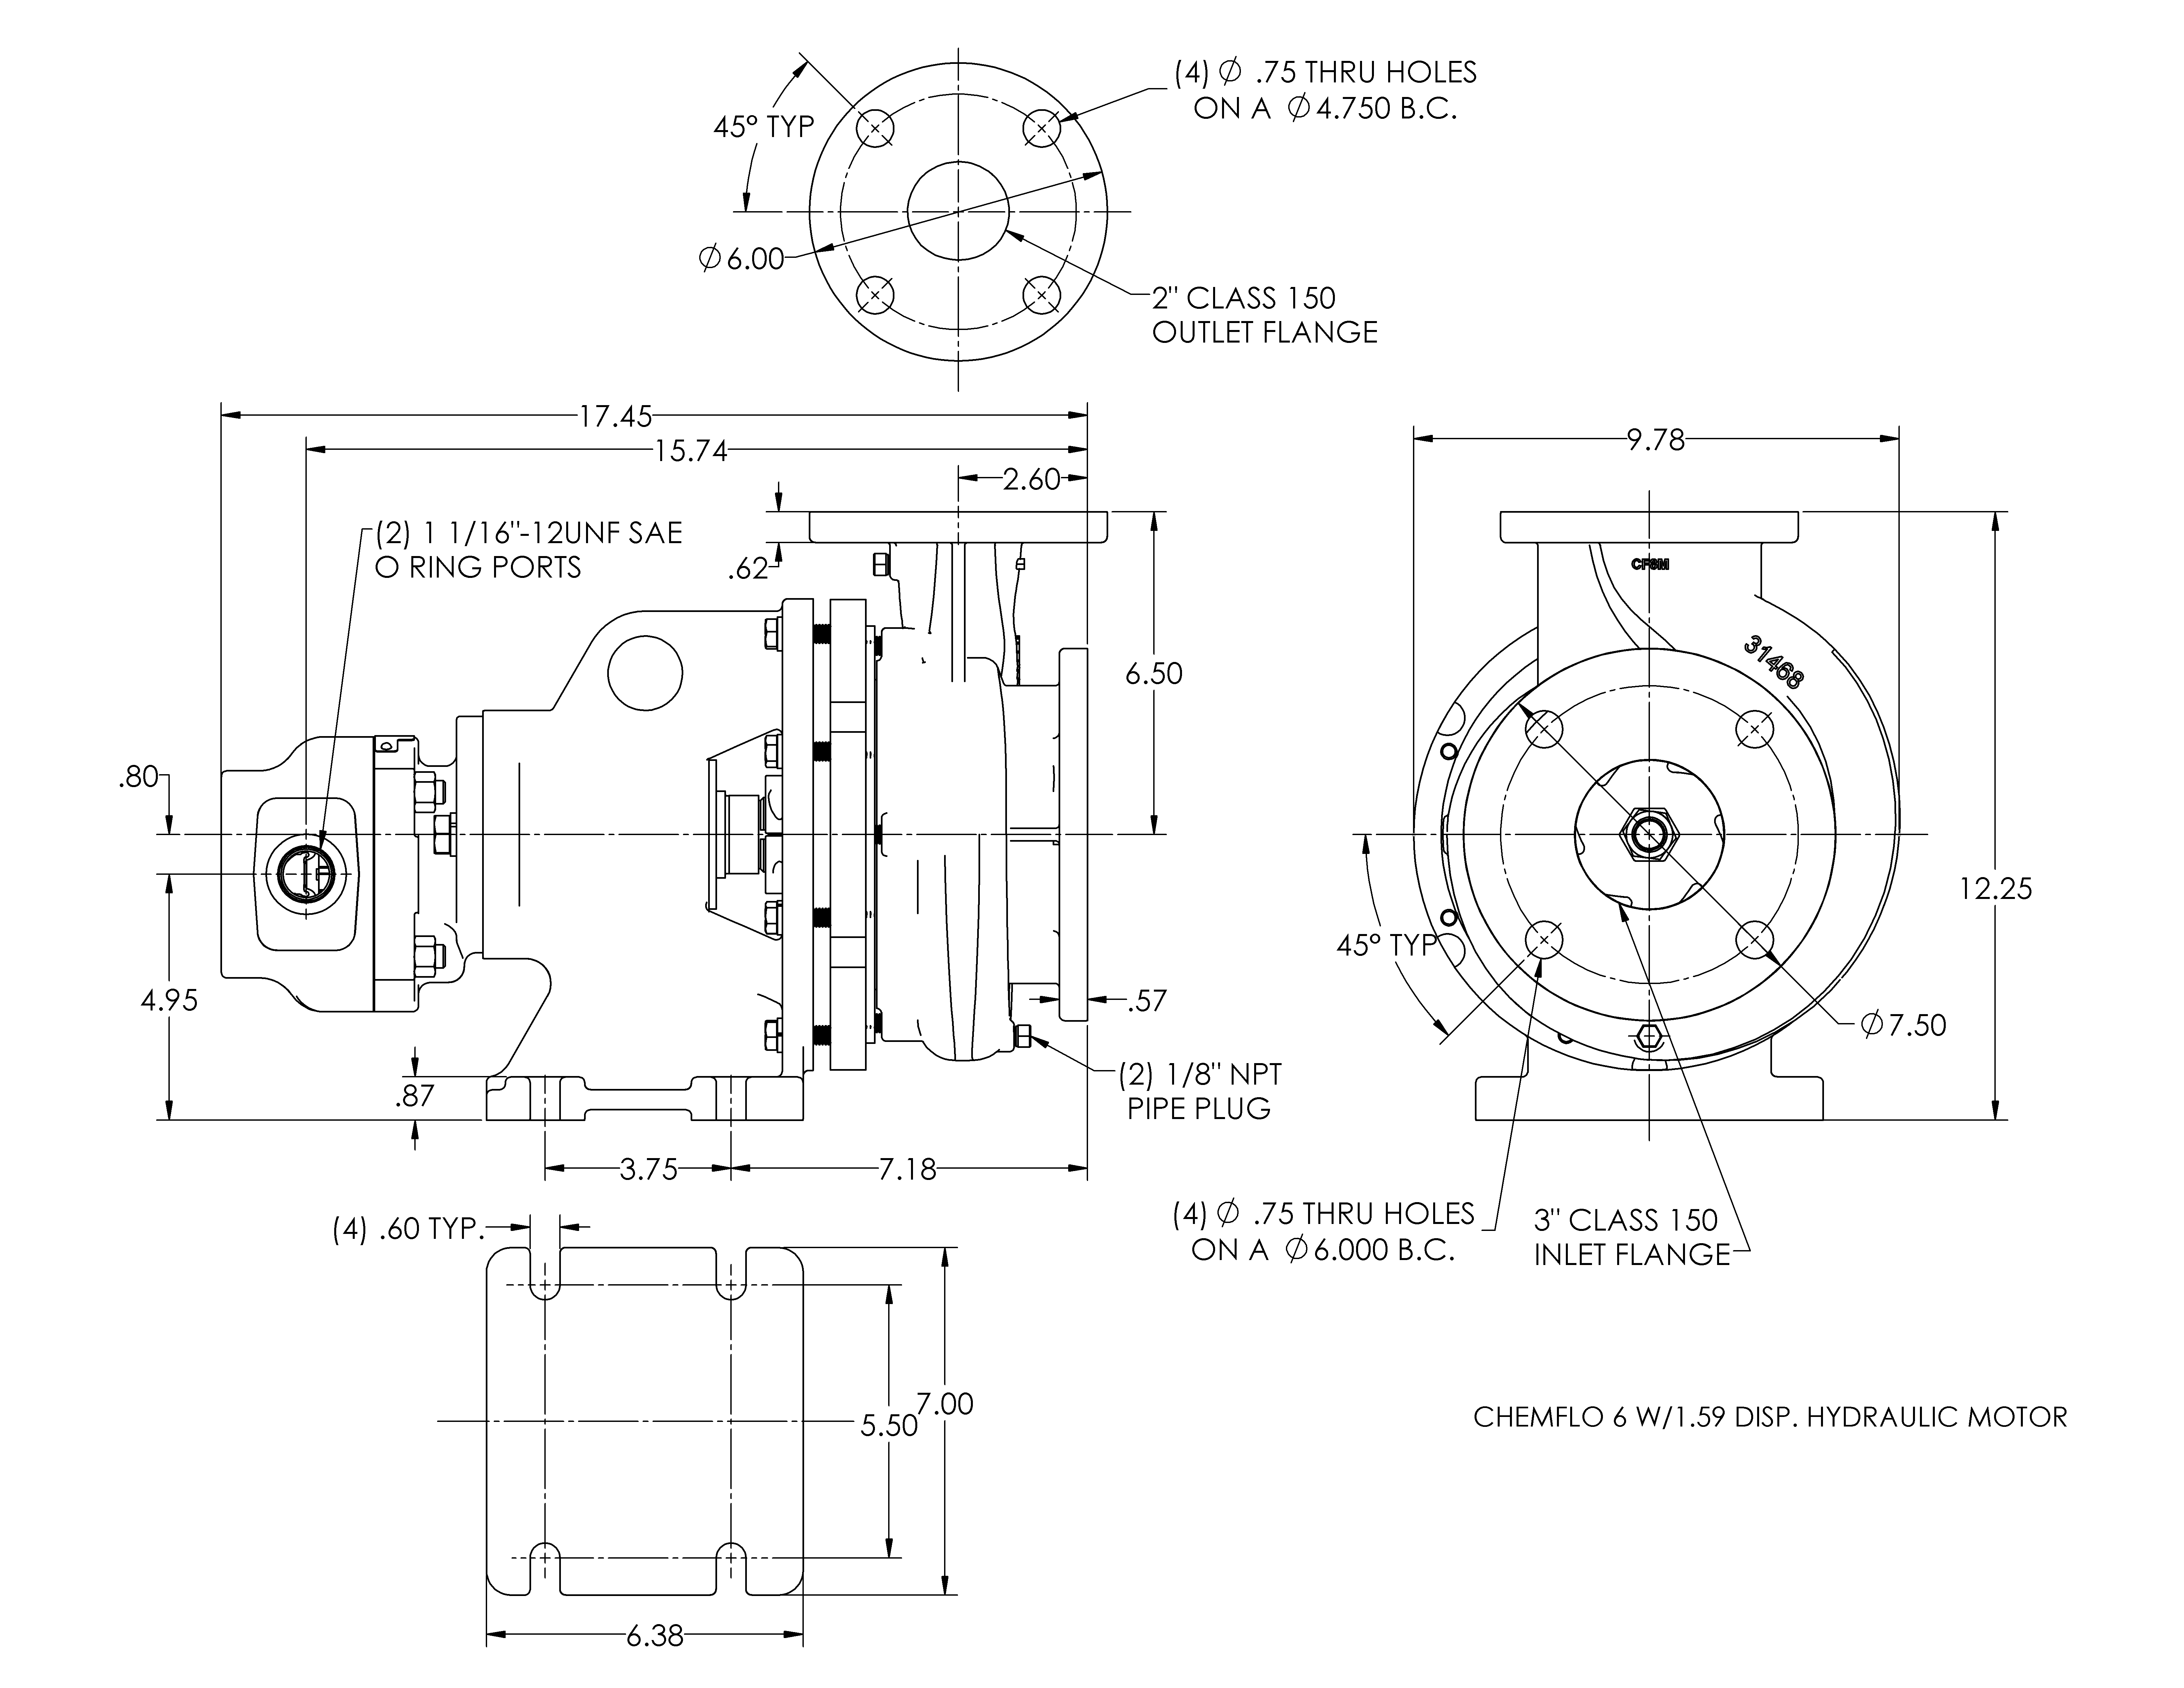 chemflo-6-hydraulic_drawing-chemflo-6-w-1-59-disp-hydraulic-motor